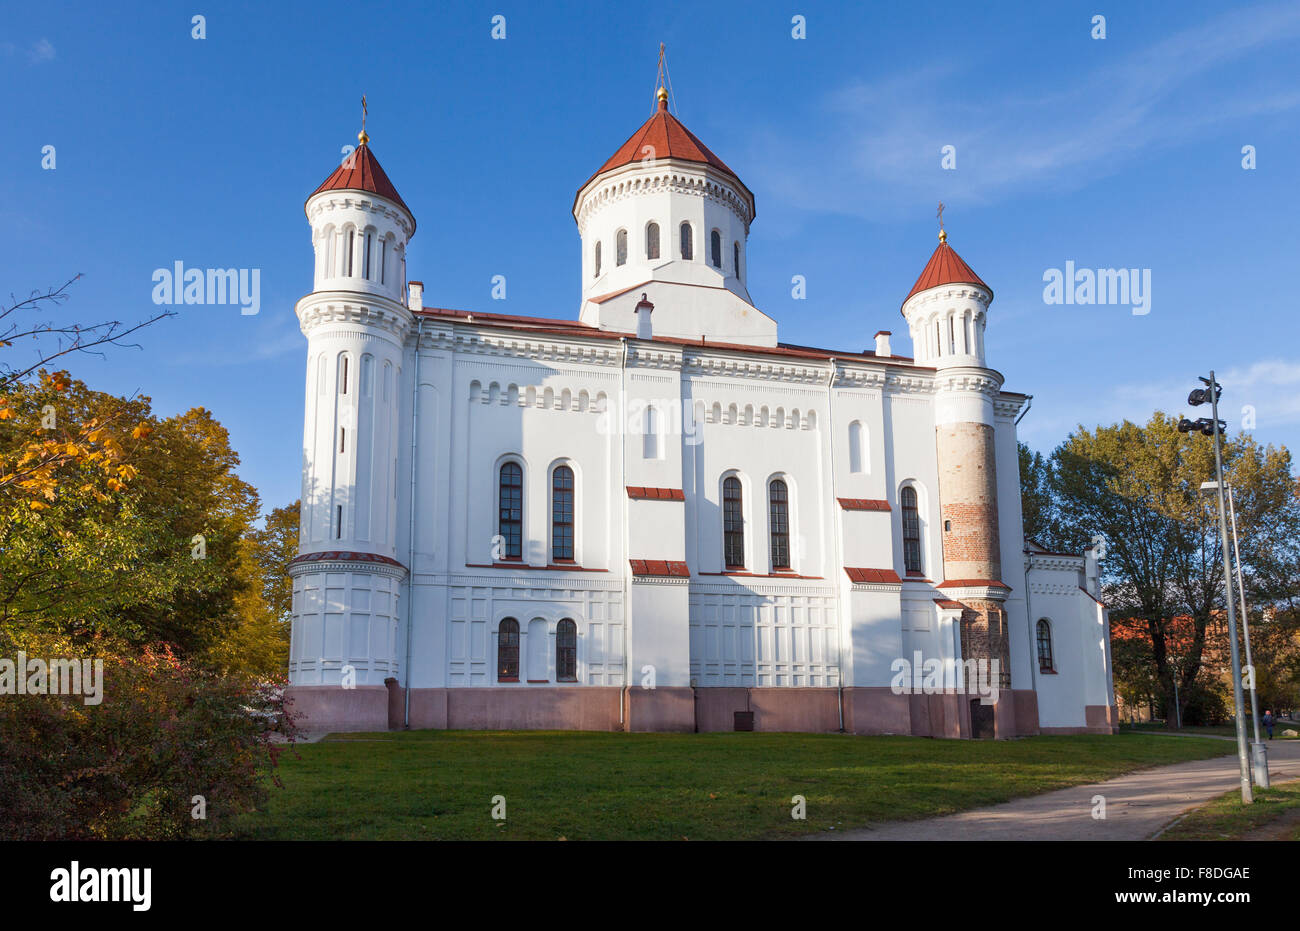 La cathédrale de la Théotokos, Vilnius, la principale église orthodoxe en Lituanie, à l'automne sur une journée ensoleillée avec ciel bleu clair Banque D'Images